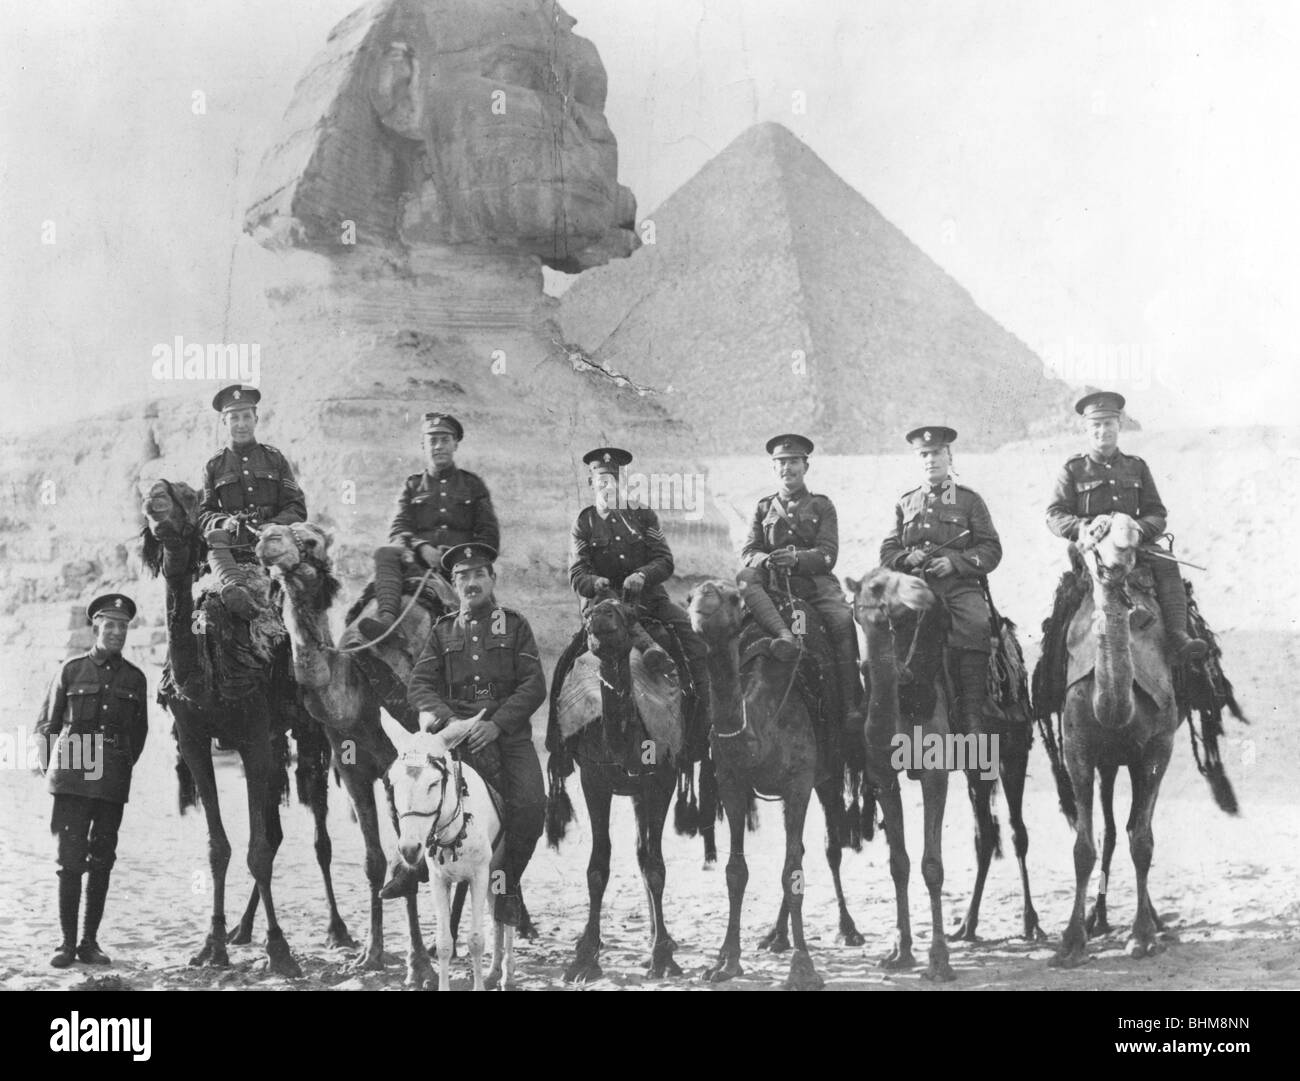 Légionnaires juifs sur des chameaux, Gizeh, Egypte, la Première Guerre mondiale, 1915-1918. Artiste : Inconnu Banque D'Images